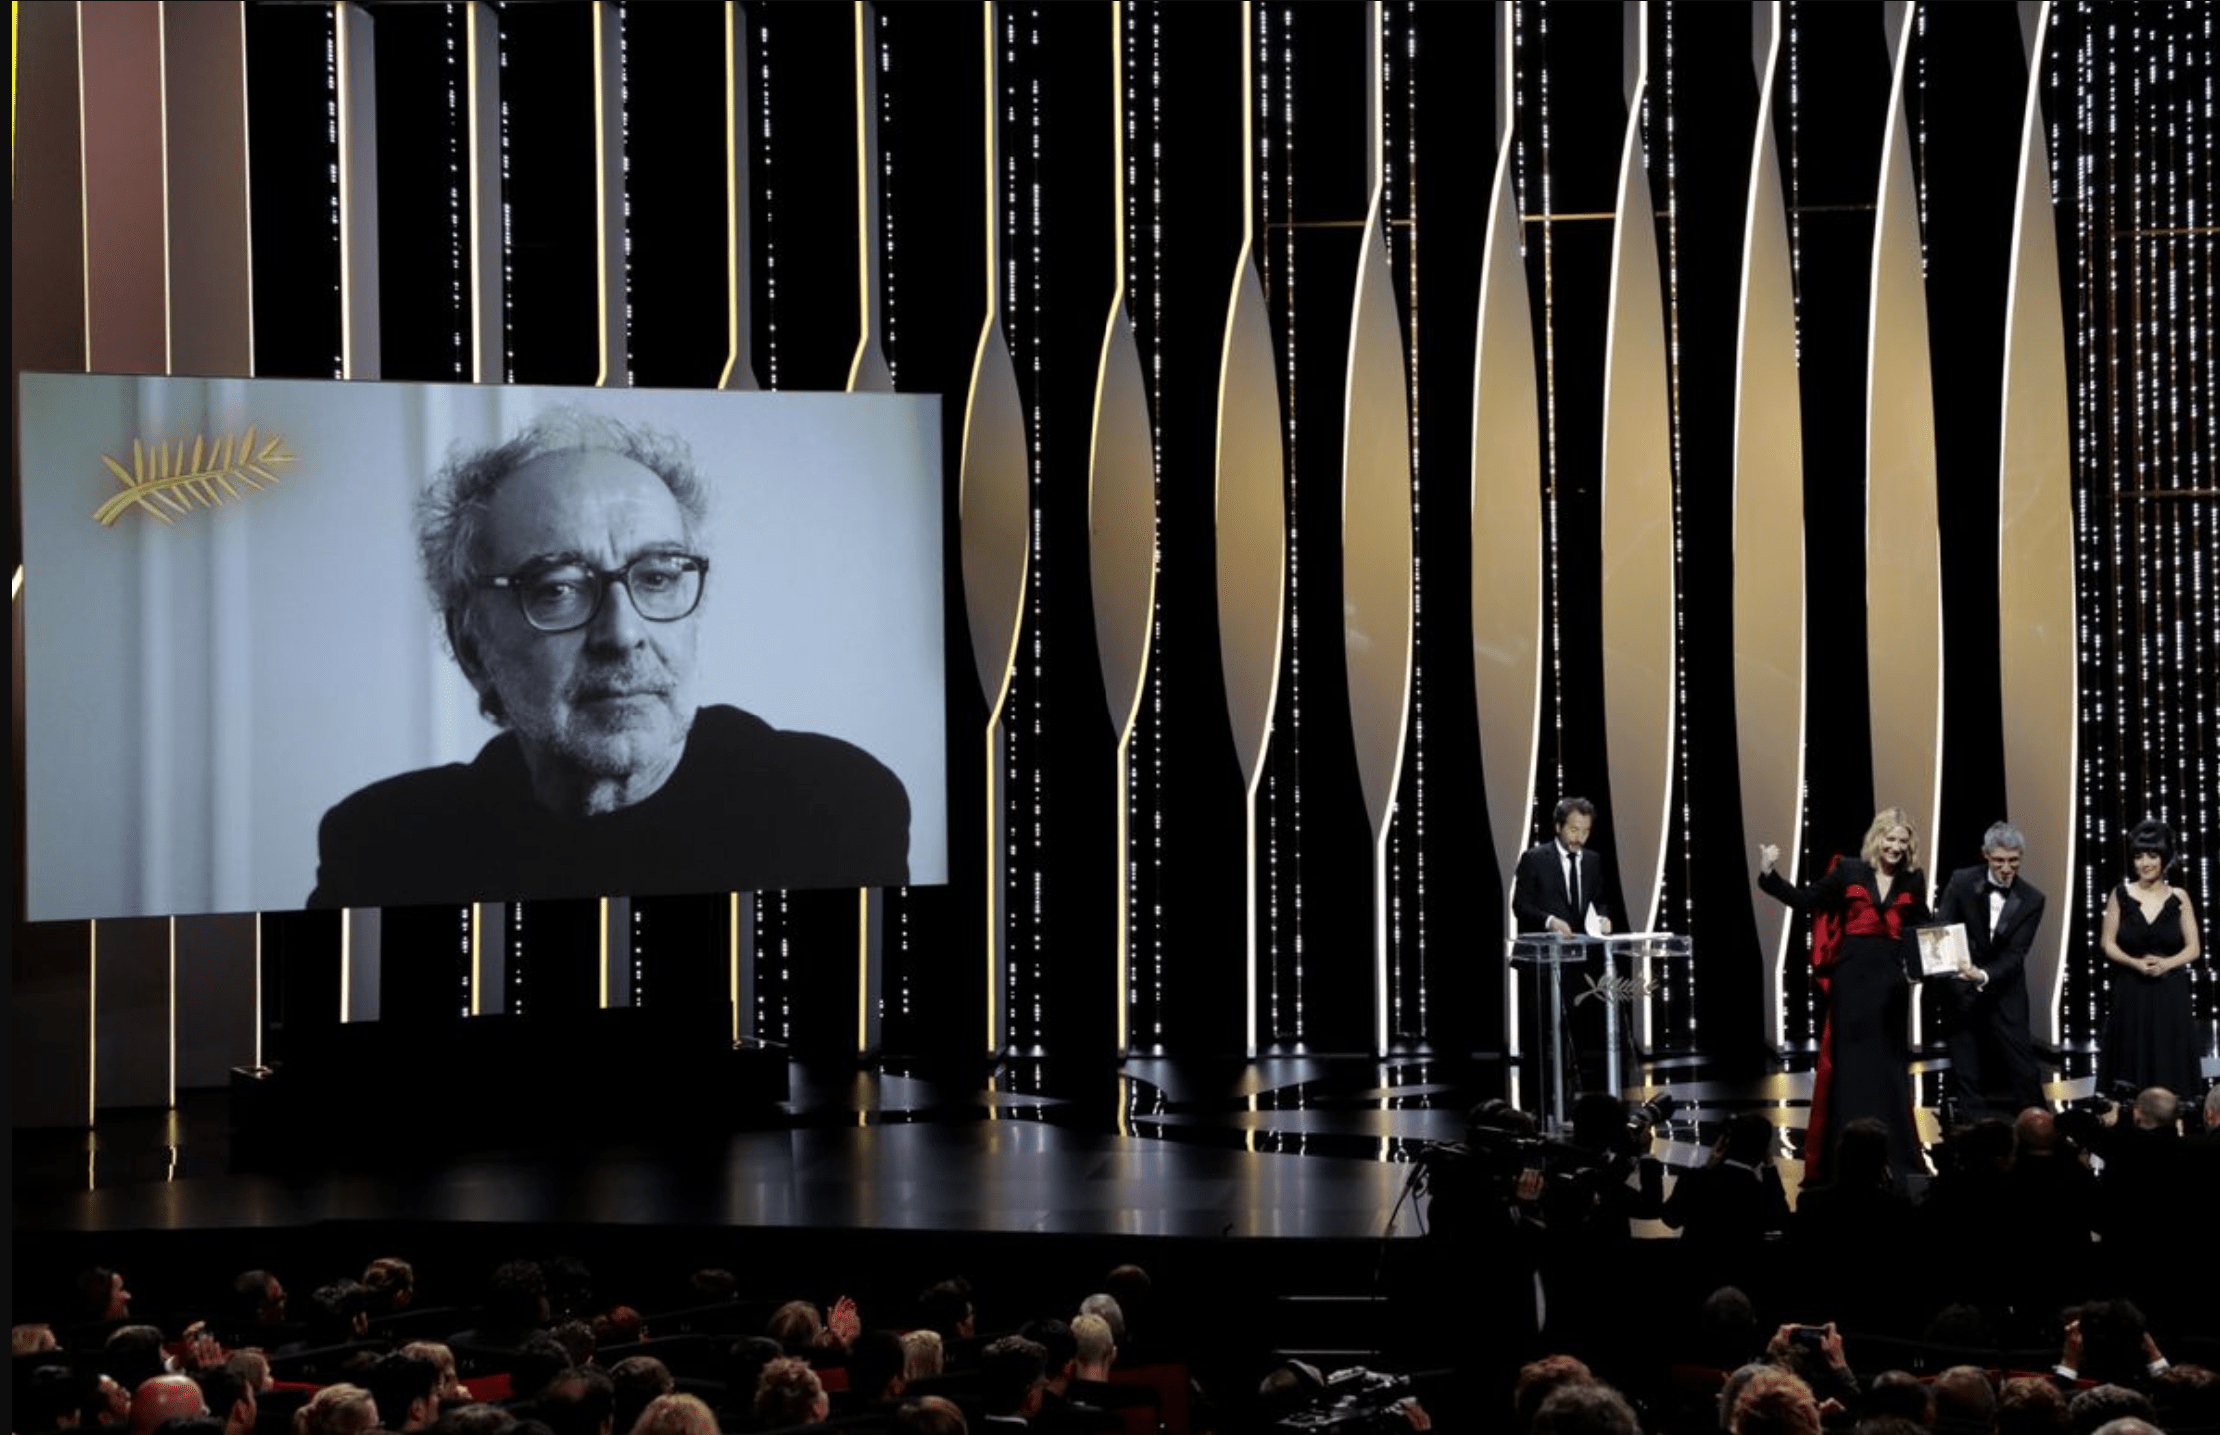 ژان لوک گدار کارگردان پیشگام سینمای موج نو فرانسه در سن ۹۱ سالگی درگذشت